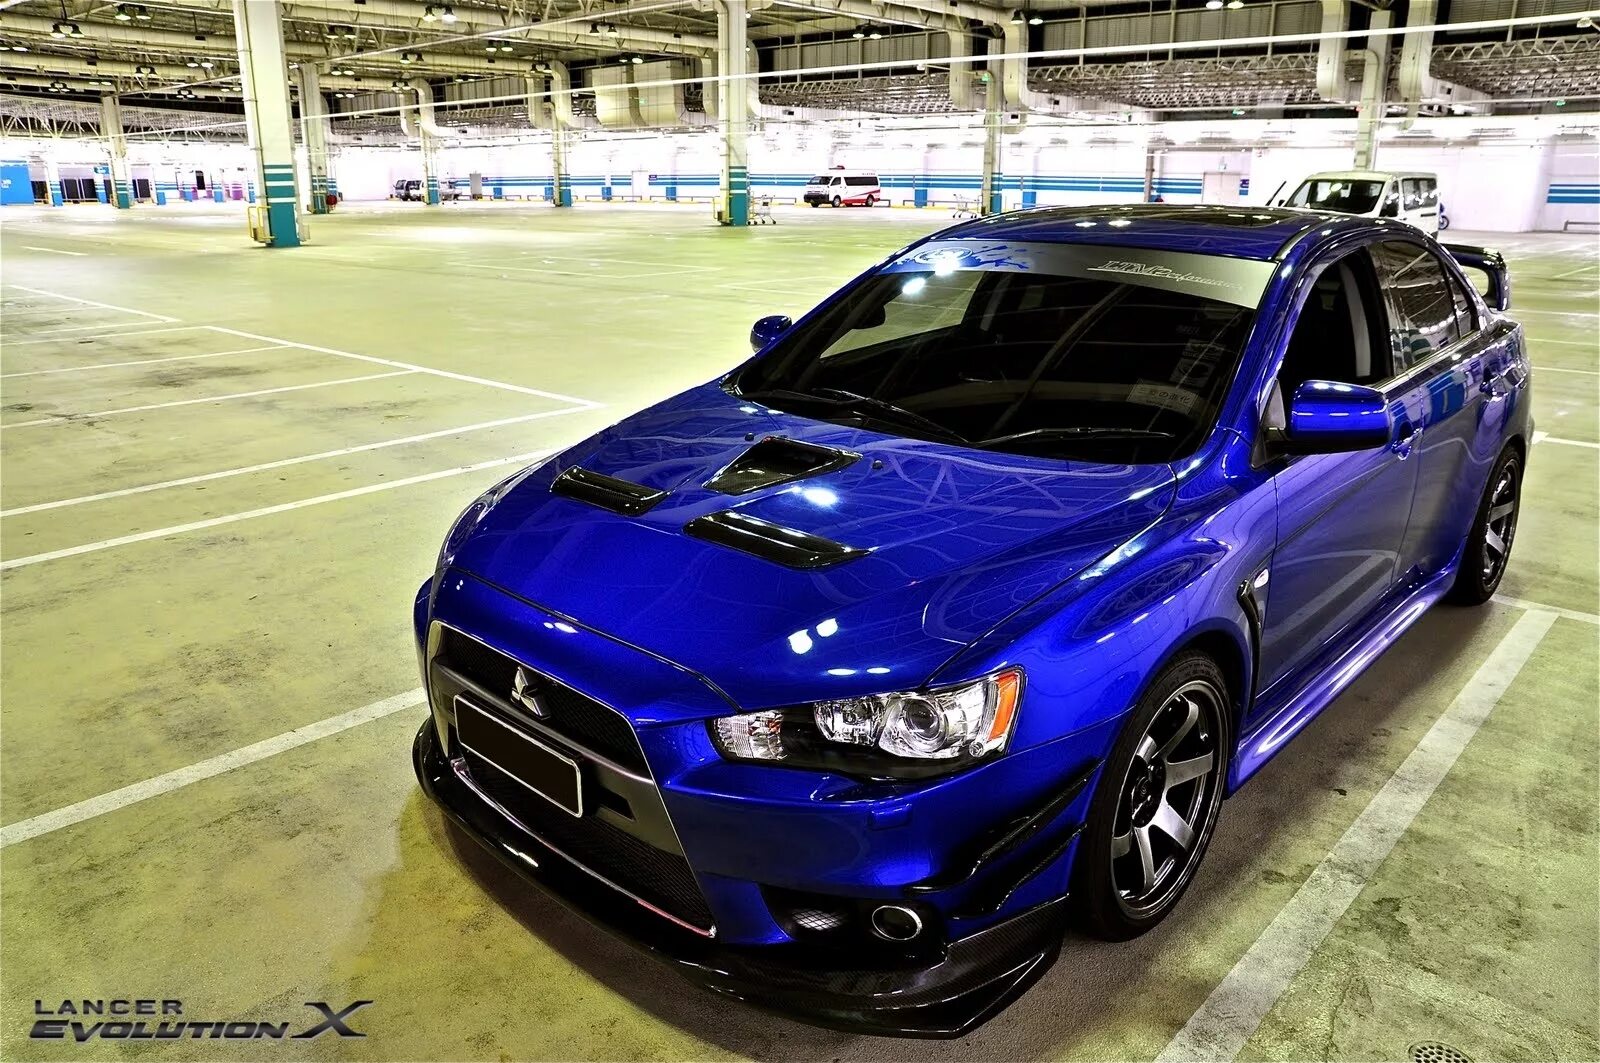 Эво карс симферополь. Mitsubishi Lancer Evolution 10 Blue. Лансер Эволюшн 10 темно синий. Лансер 10 Эво синий. Mitsubishi Lancer Evolution 10 синий.